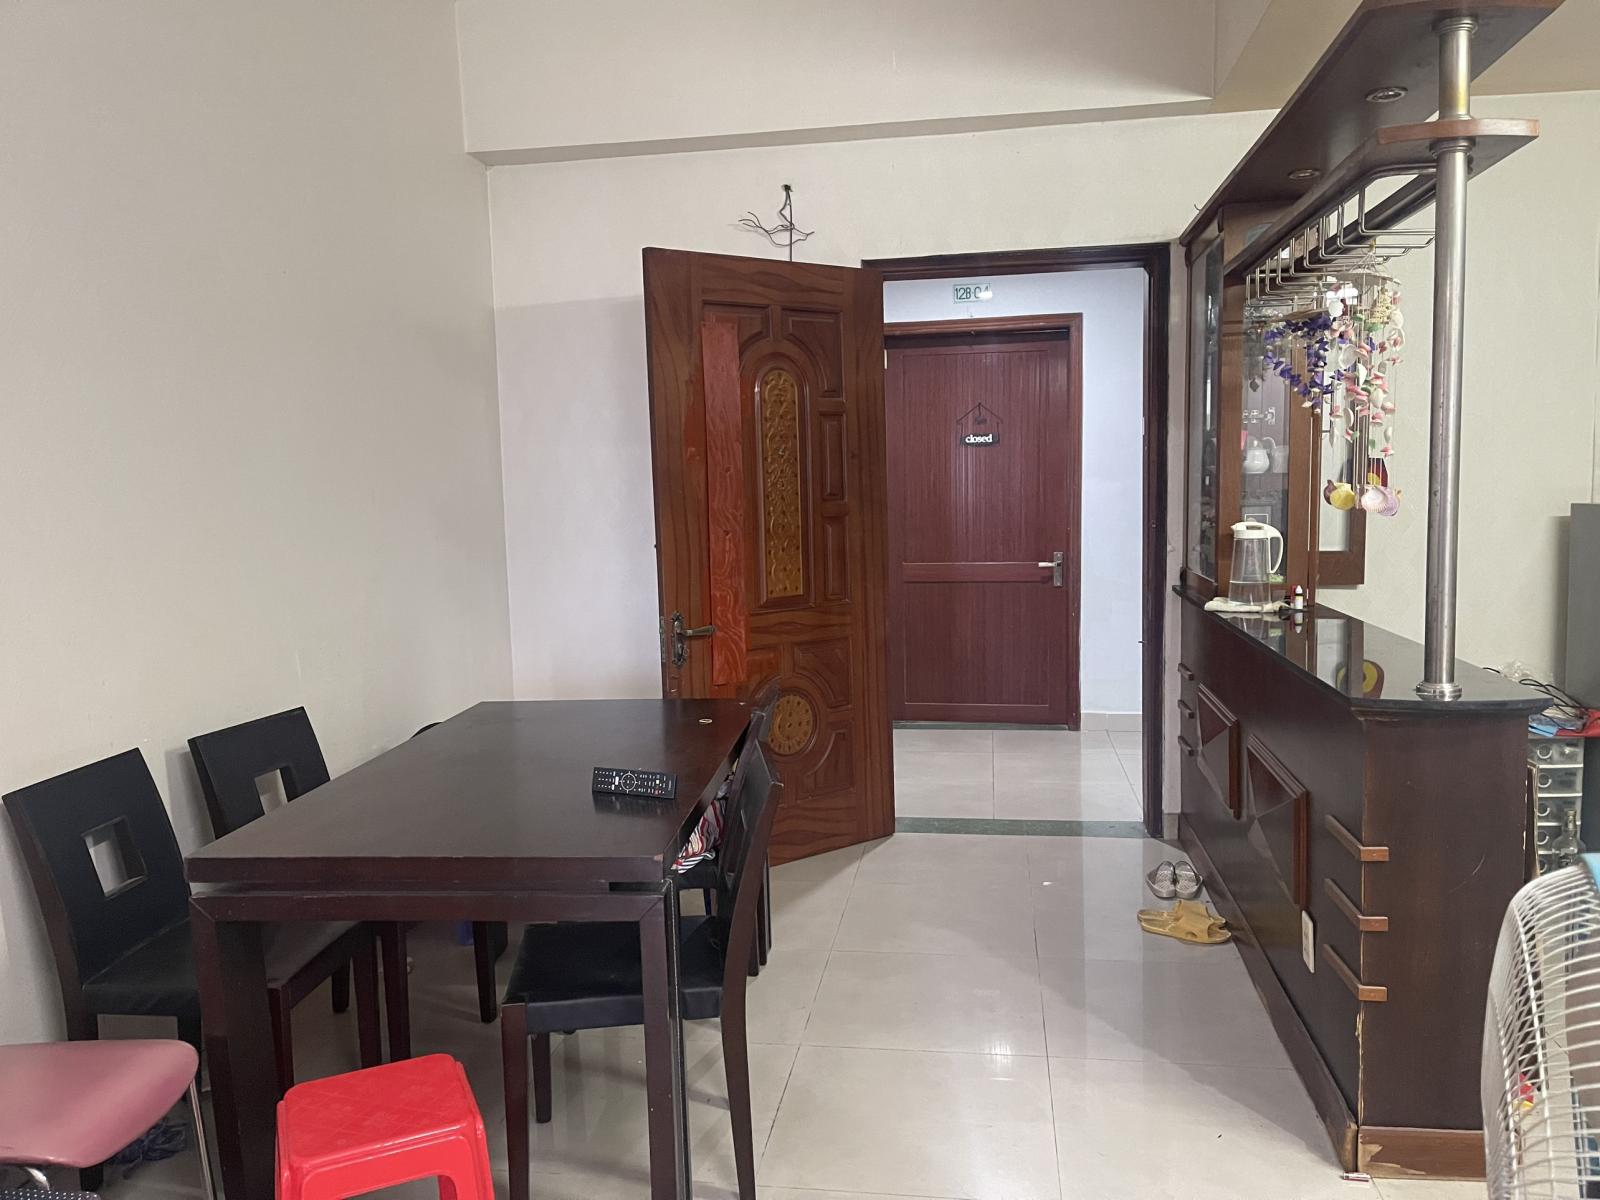 Cần cho thuê căn hộ Minh Thành Quận 7 có nội thất và ban công giá 9.5tr/tháng.LH 0909802822 Trân